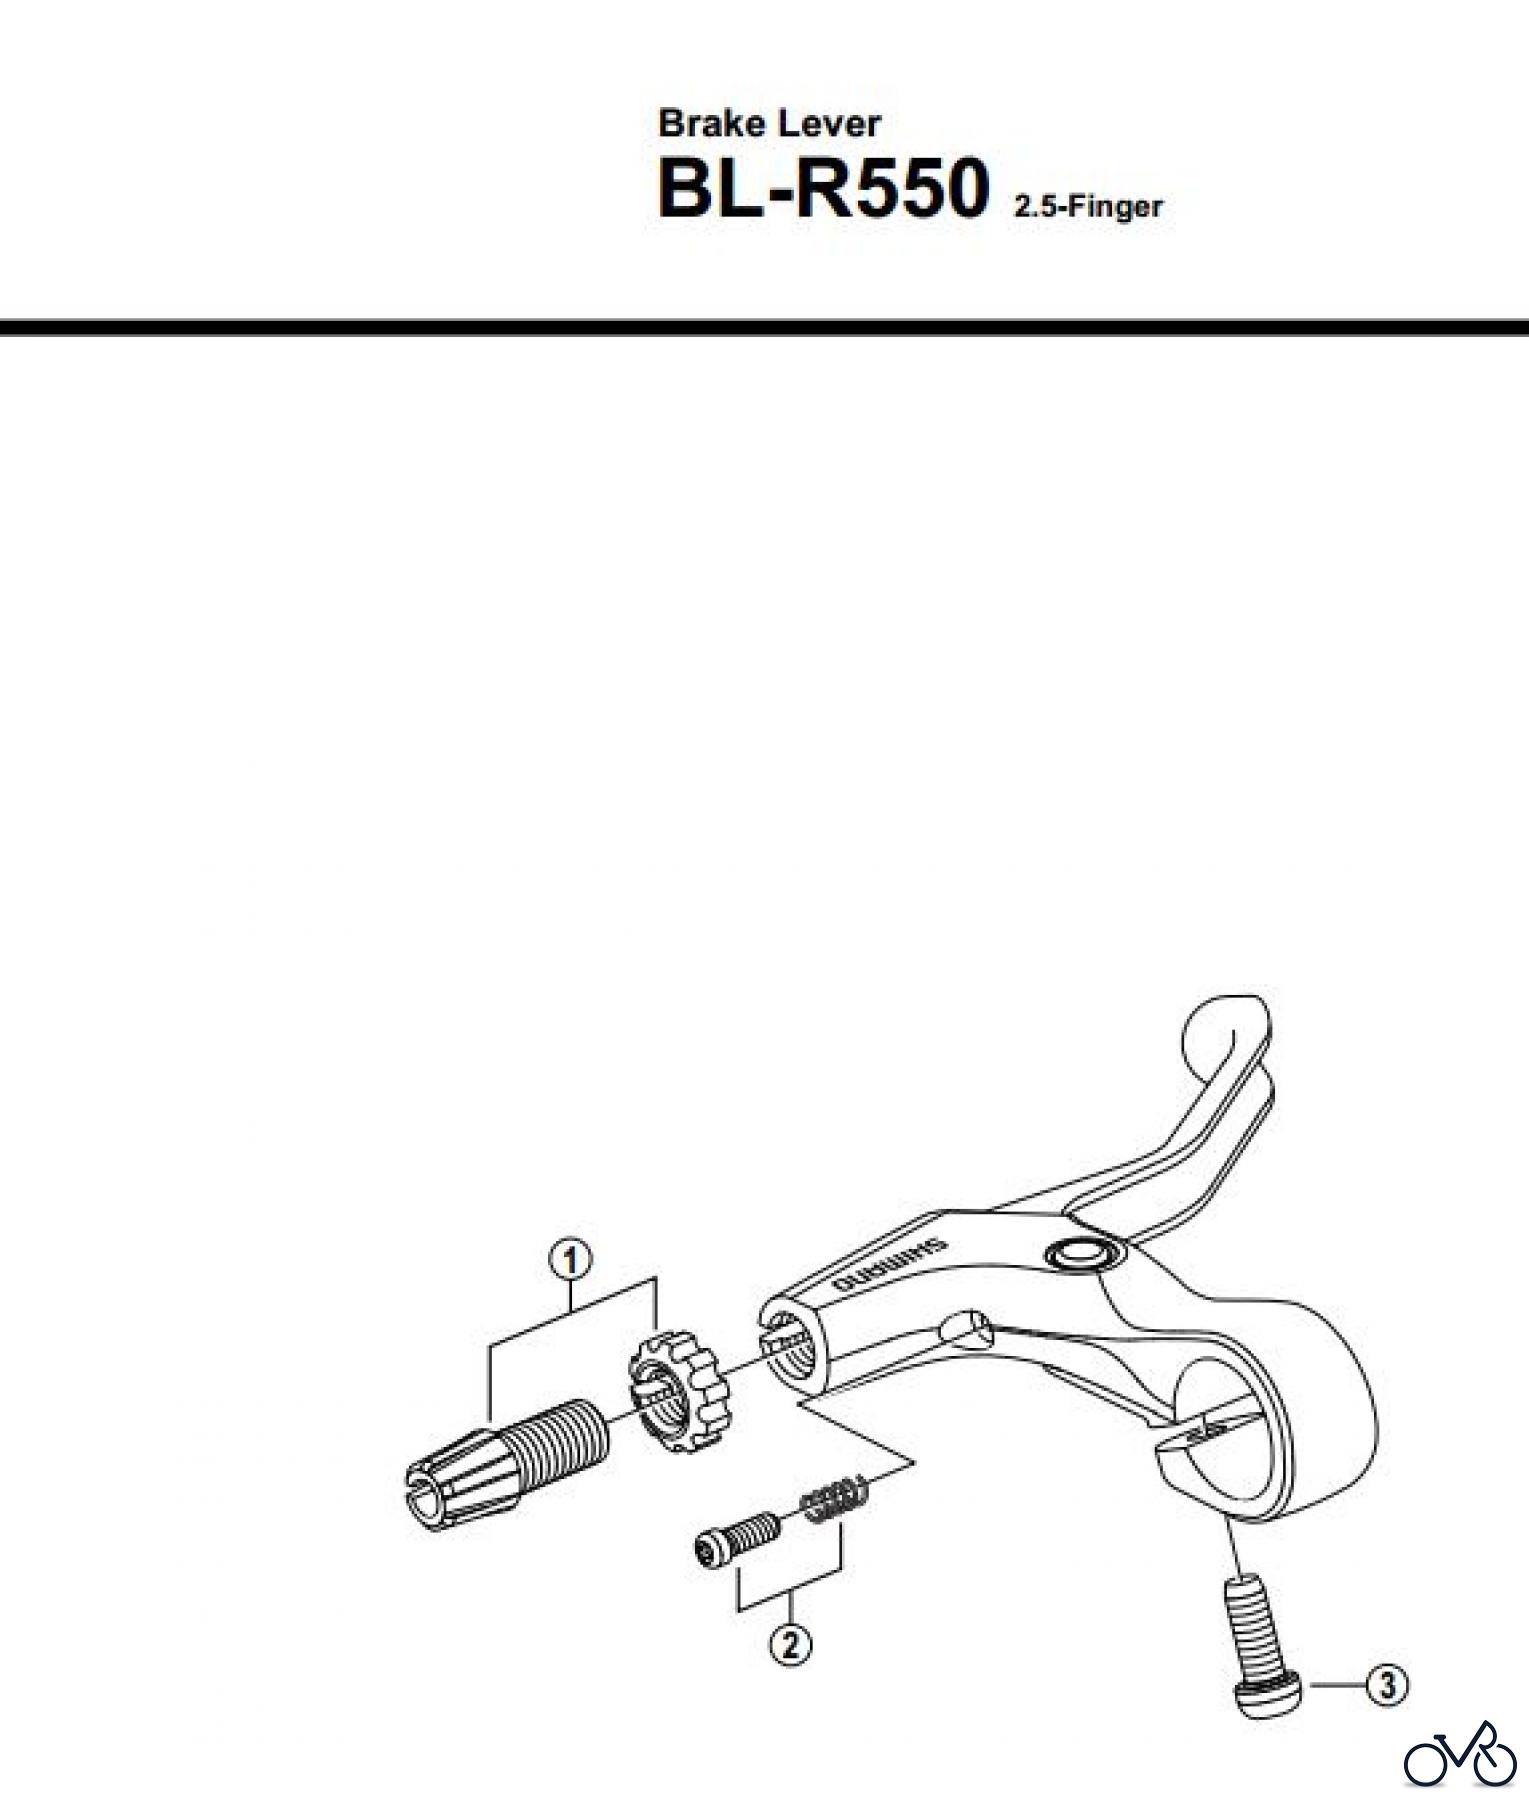  Shimano BL Brake Lever - Bremshebel BL-R550